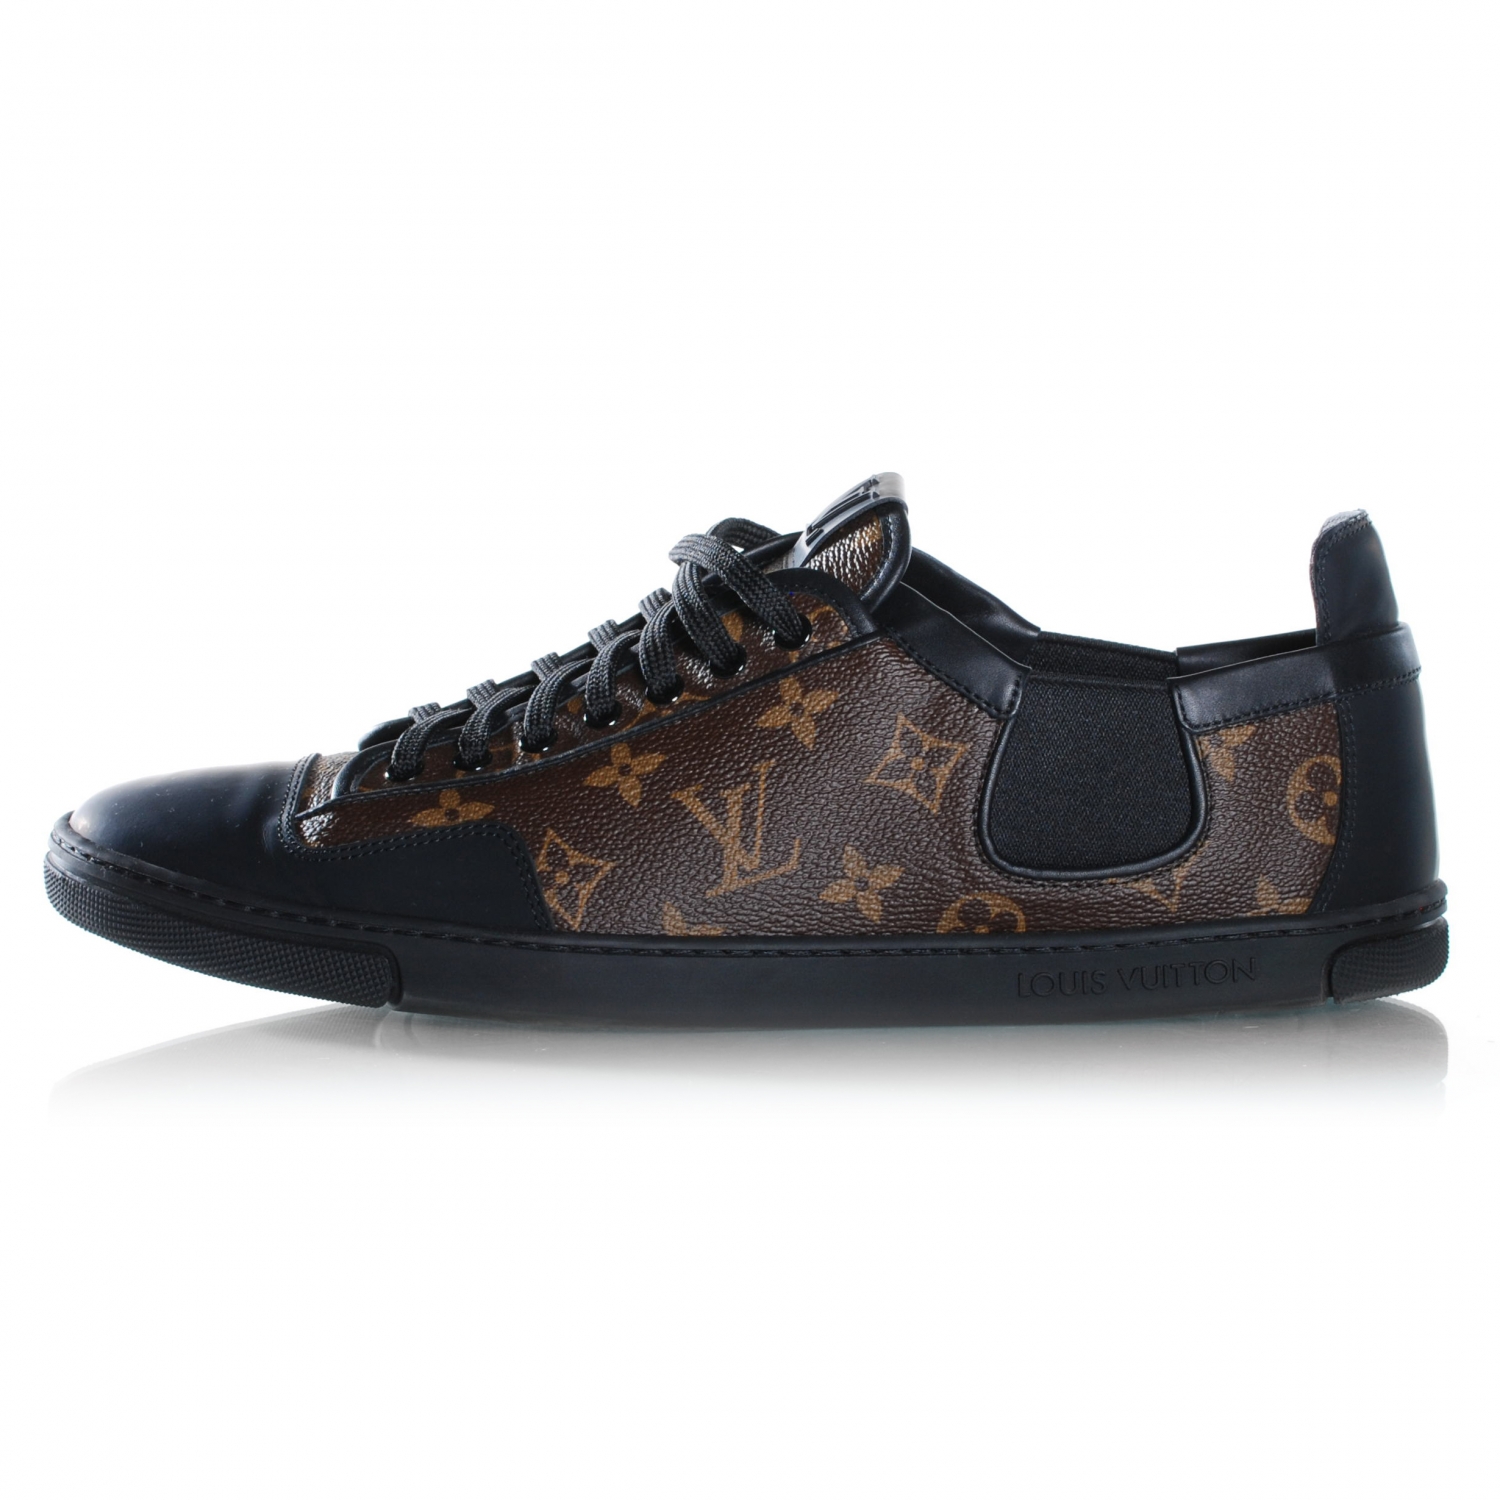 Shoes Men Louis Vuitton | Wydział Cybernetyki